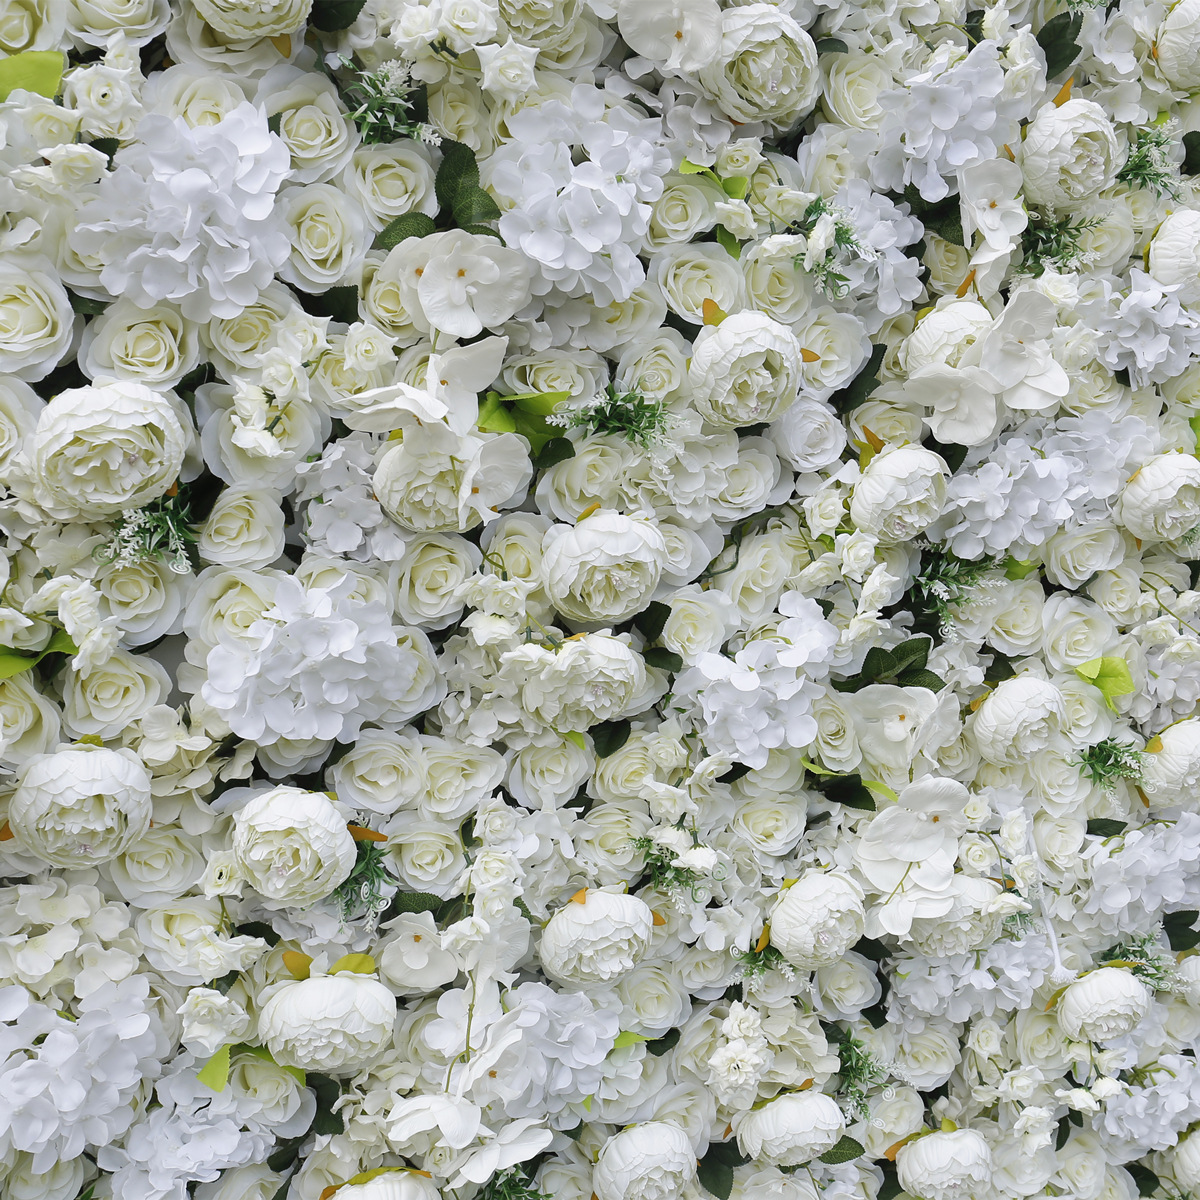 Rentas sempadan putih 5D simulasi bahagian bawah dinding bunga dinding latar belakang alat peraga perkahwinan studio selebriti internet fotografi dinding bunga peony